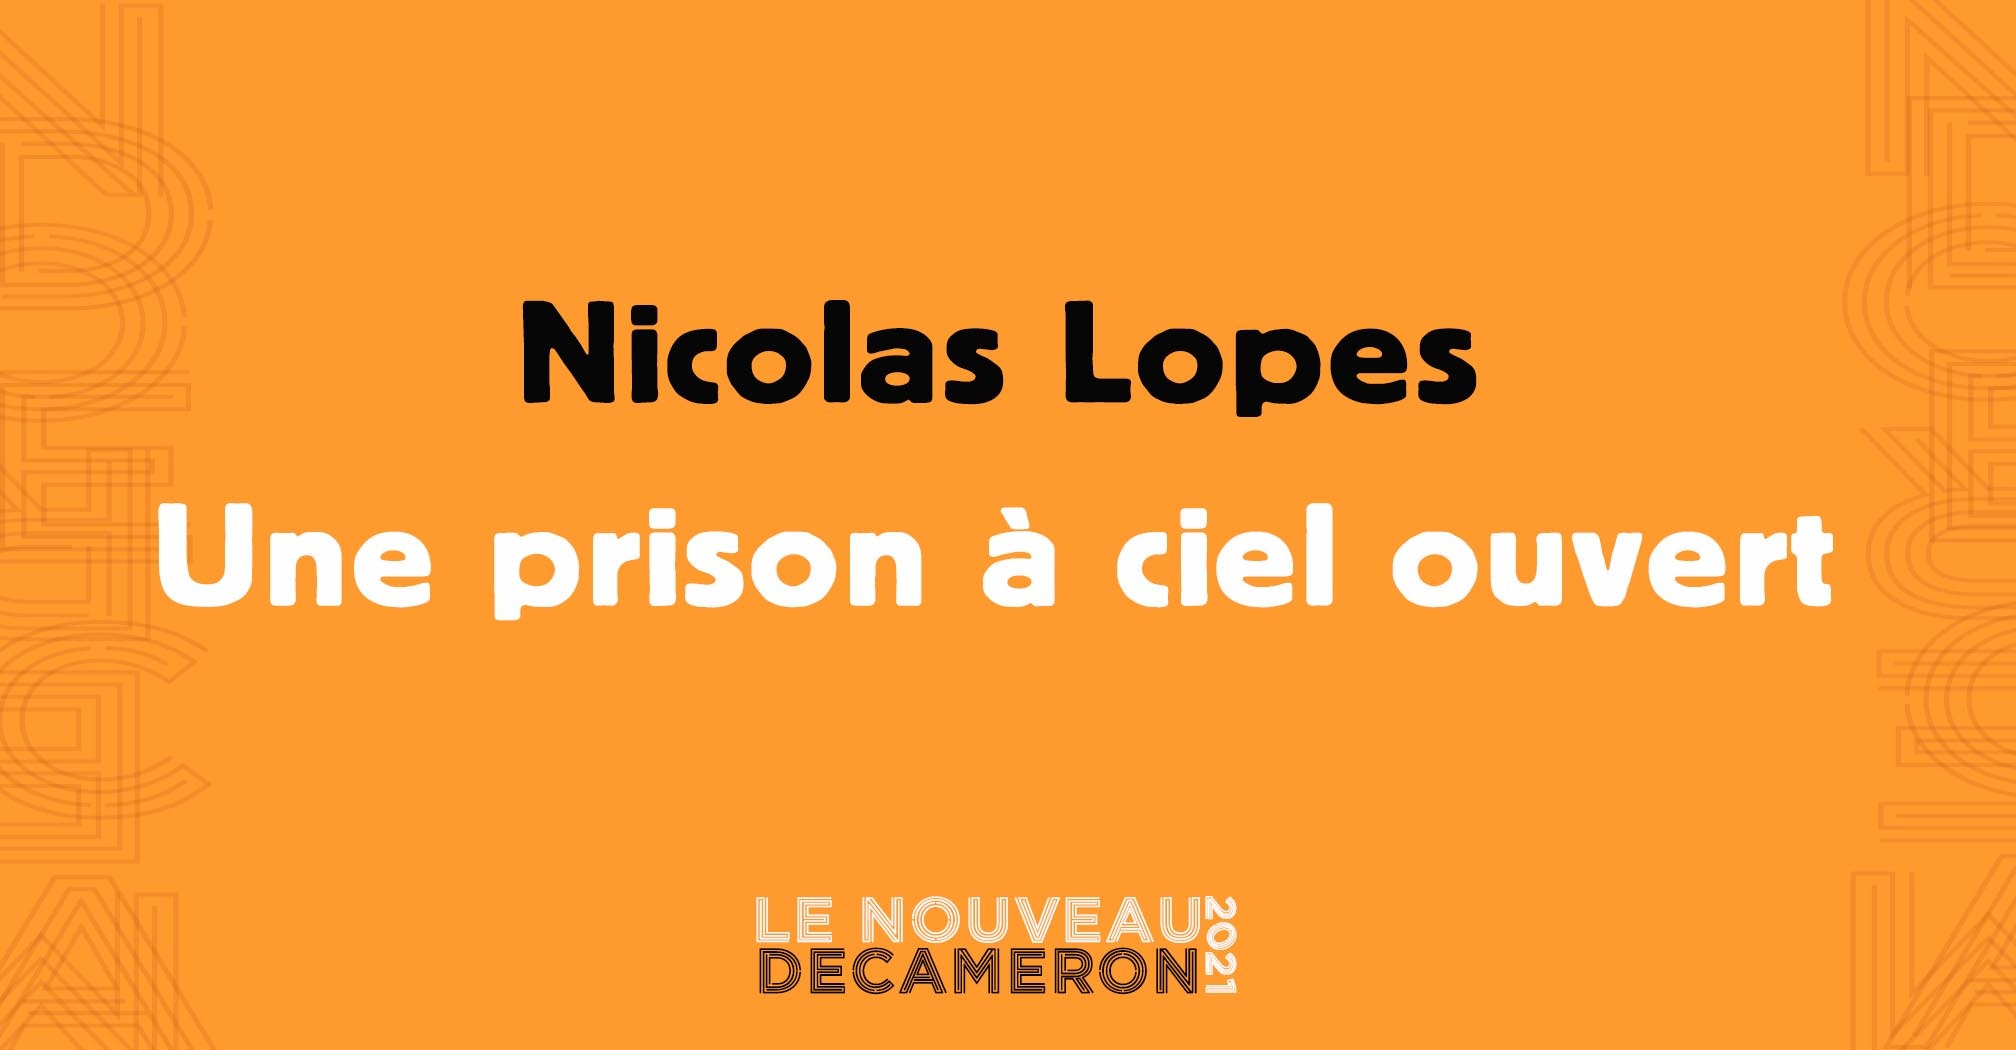 Nicolas Lopes - Une prison à ciel ouvert